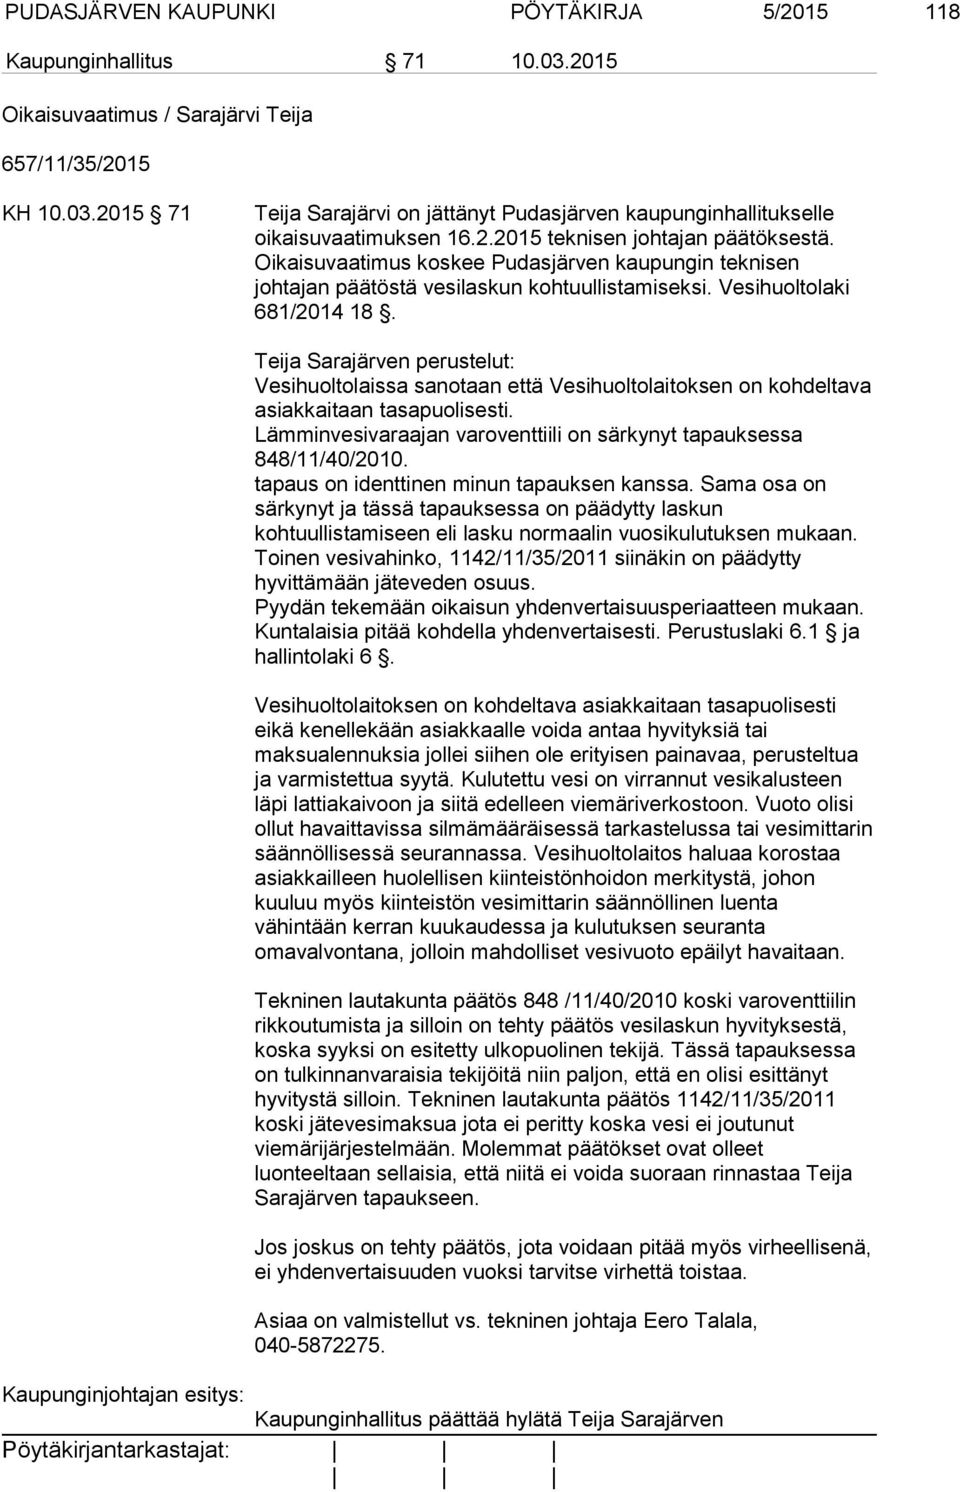 Teija Sarajärven perustelut: Vesihuoltolaissa sanotaan että Vesihuoltolaitoksen on kohdeltava asiakkaitaan tasapuolisesti. Lämminvesivaraajan varoventtiili on särkynyt tapauksessa 848/11/40/2010.